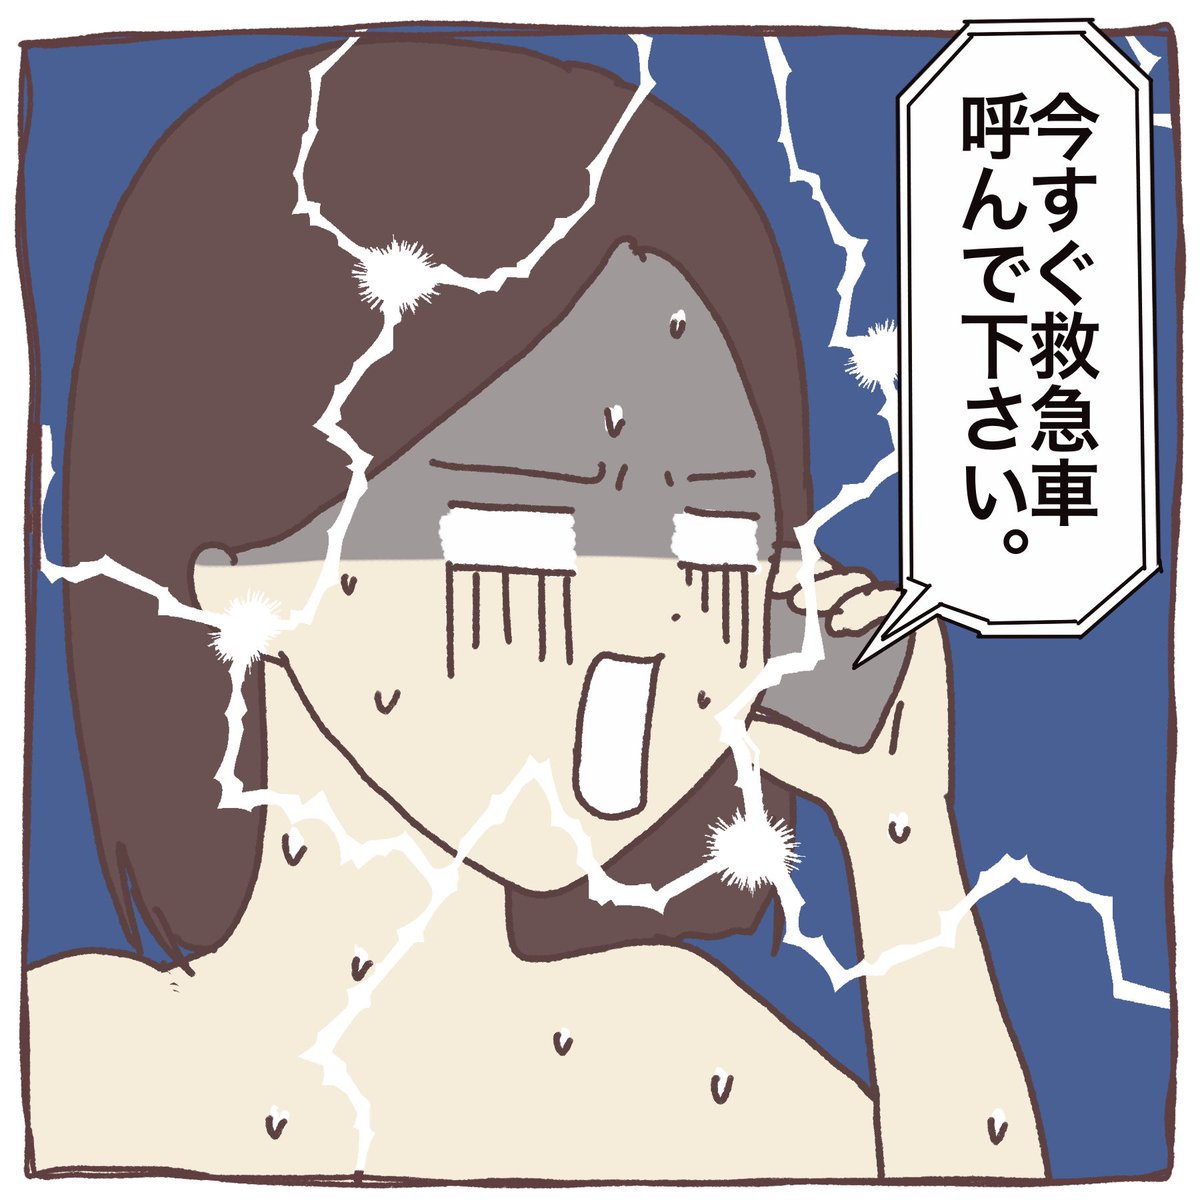 お風呂上がりに救急車を呼んだ話【1】
(1/4)

#漫画が読めるハッシュタグ 